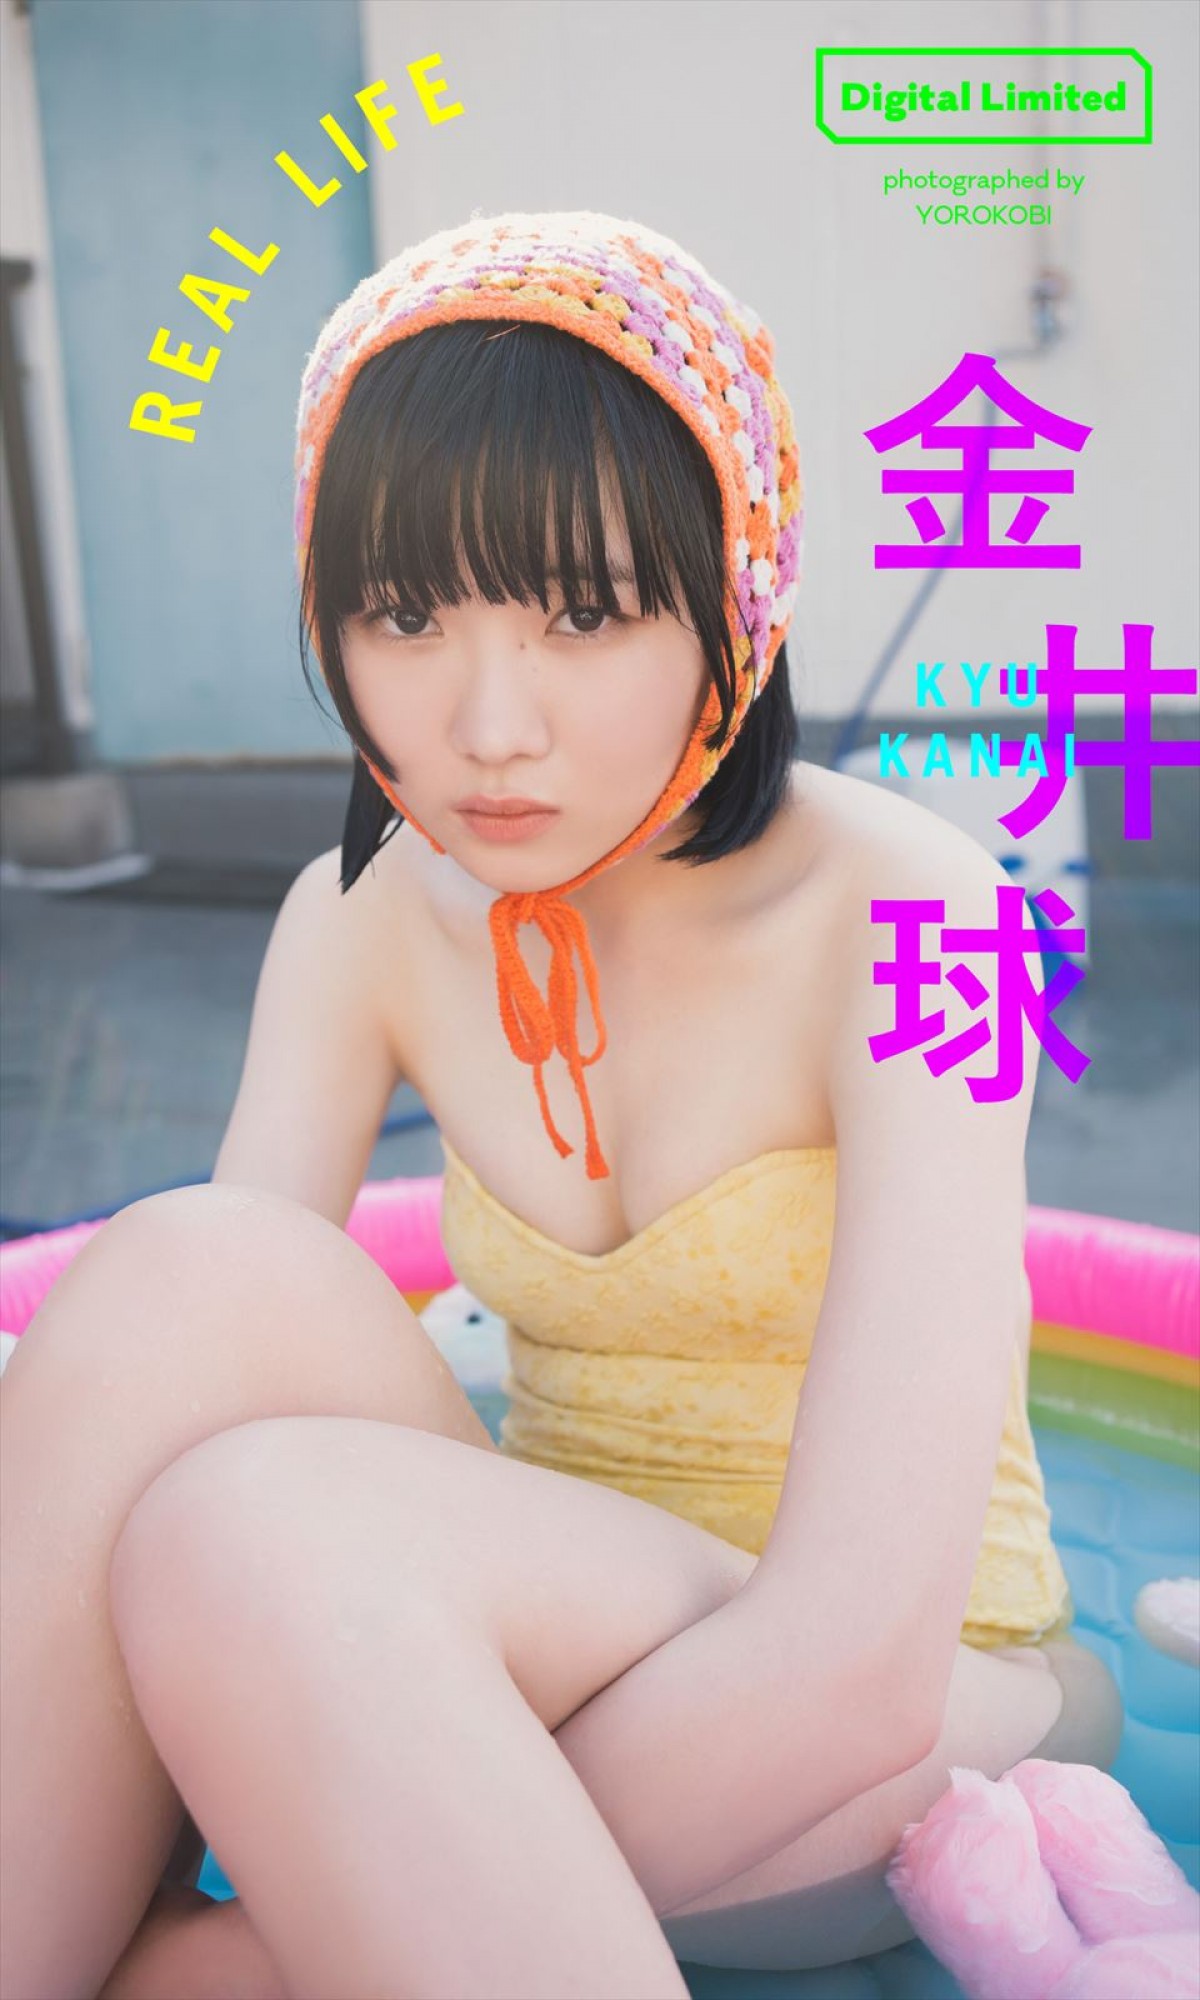 「ミス週刊少年マガジン」2020年受賞の菊地姫奈18歳、ふんわりビキニで魅せる